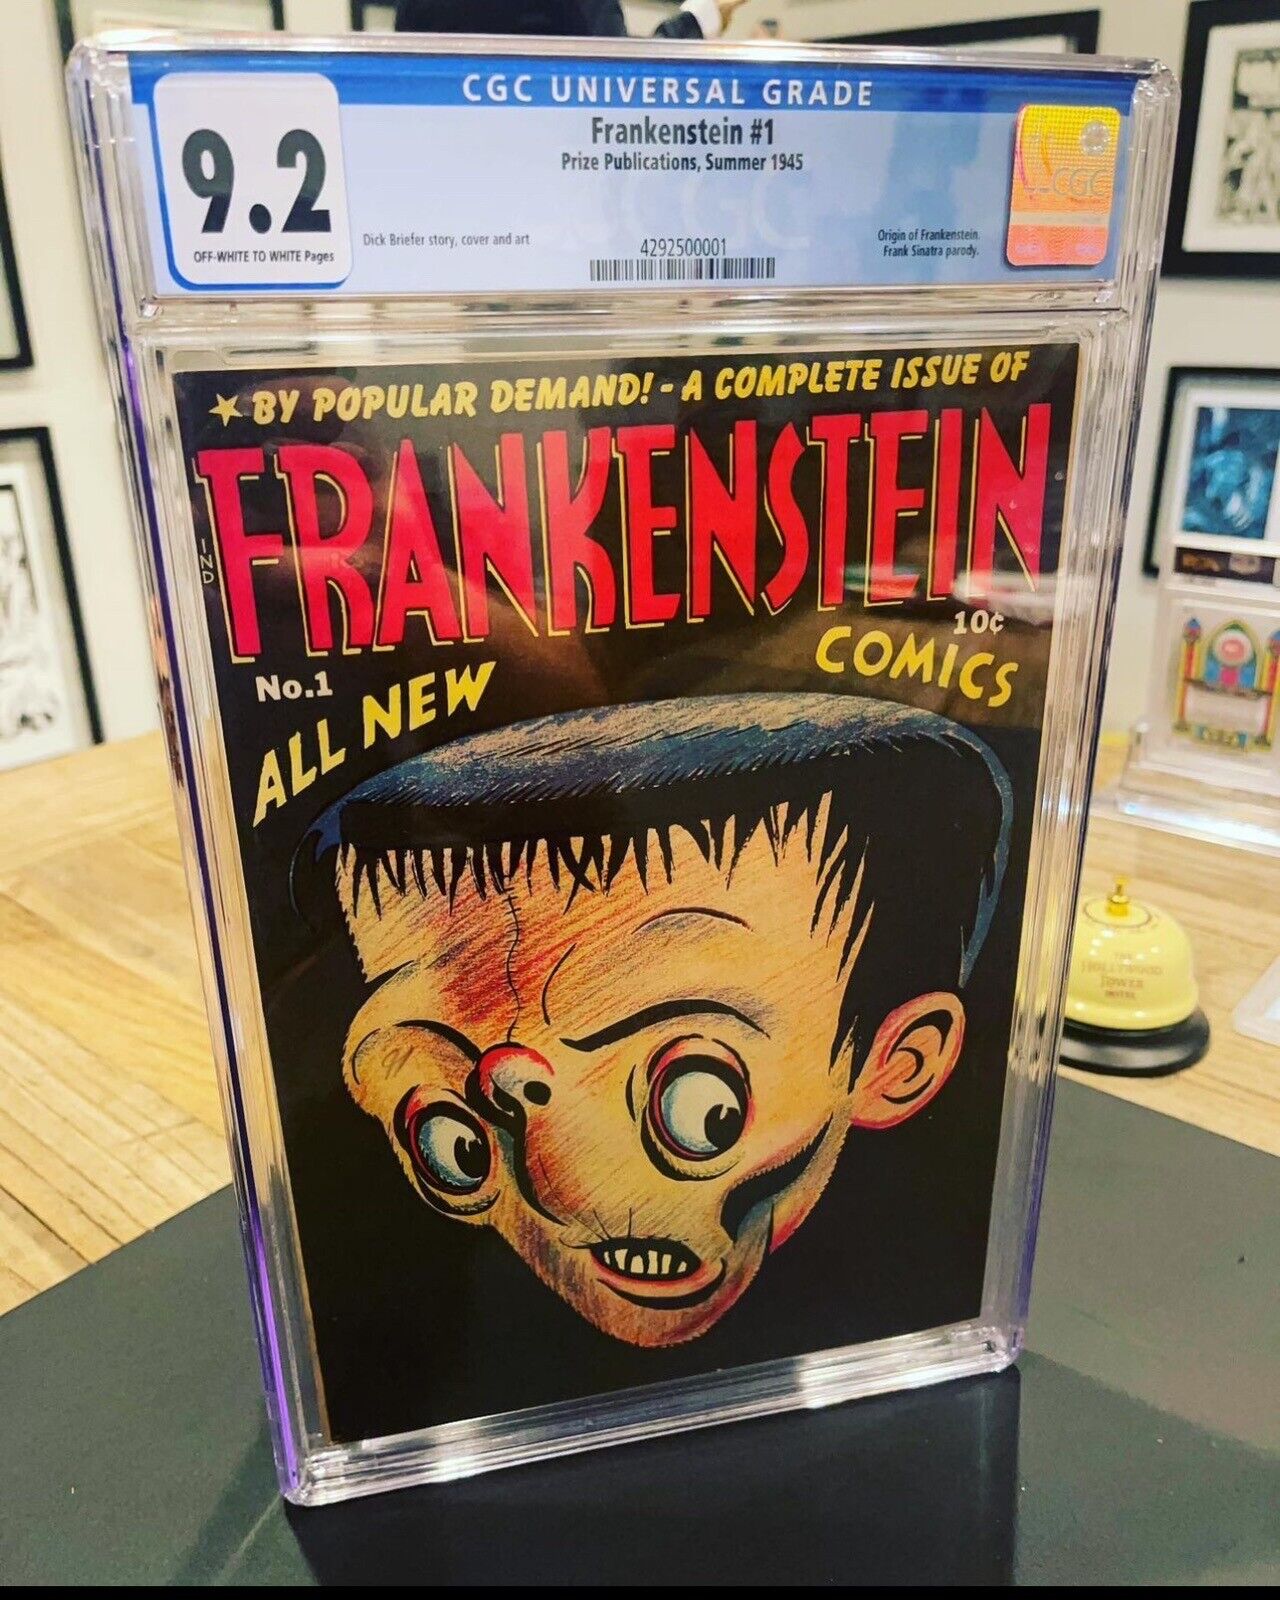 Frankenstein #1 1945 CGC 9.2 OW/W 2nd highest graded Key origin Of Frankenstein